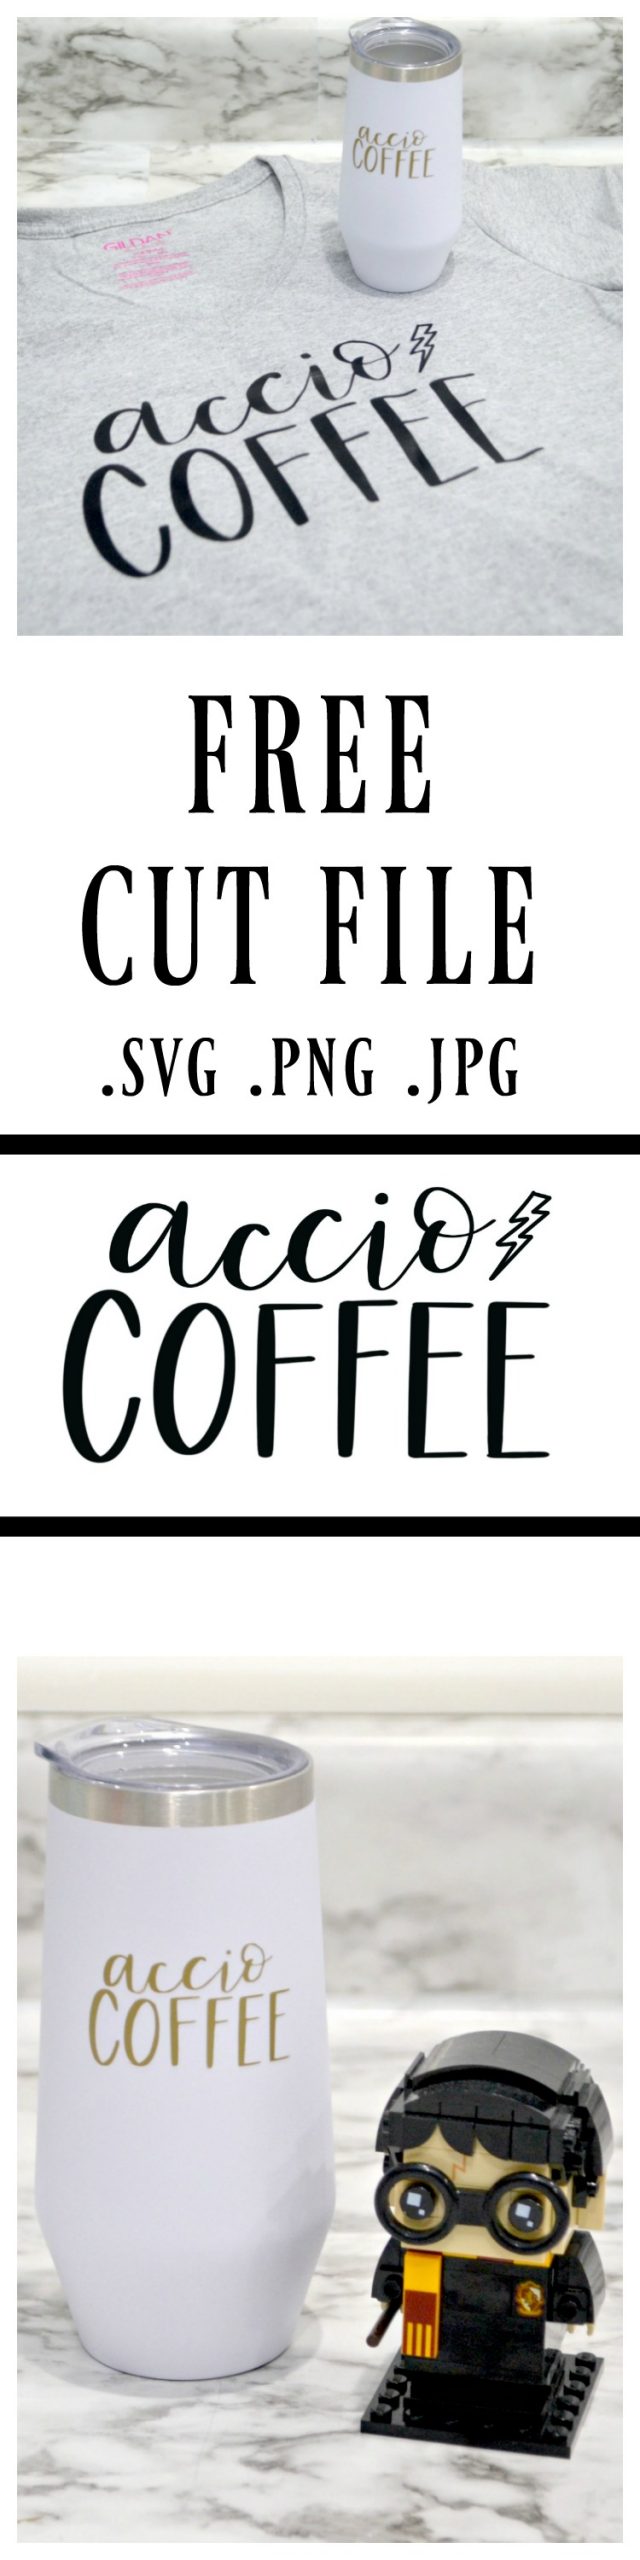 Accio Coffee Free Cut File